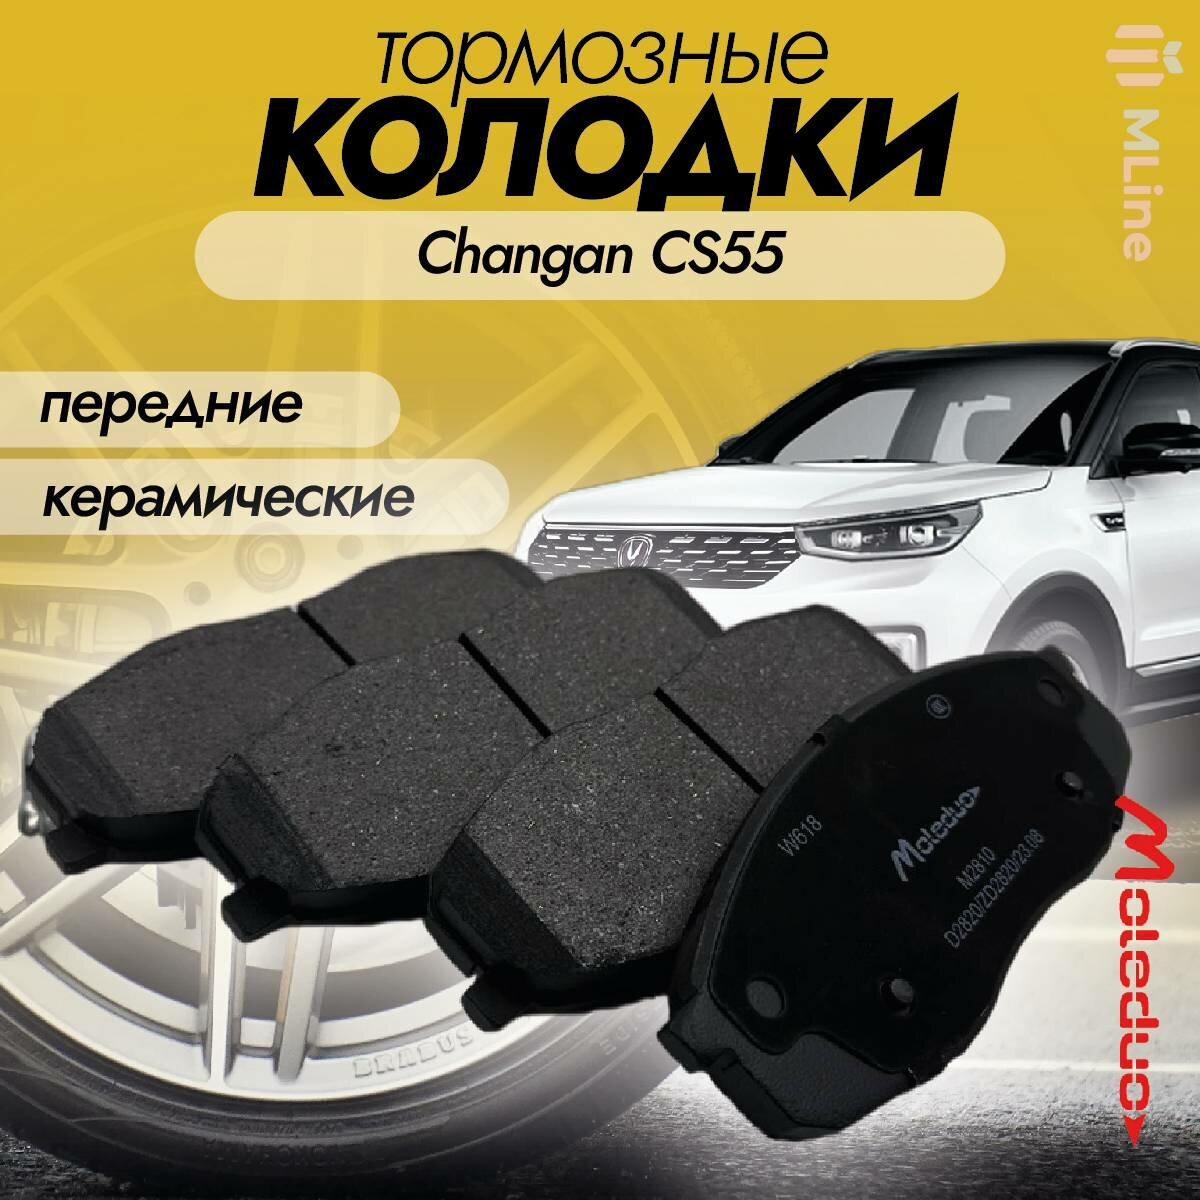 Колодки тормозные передние керамические Moleduo M2810 для Changan CS55